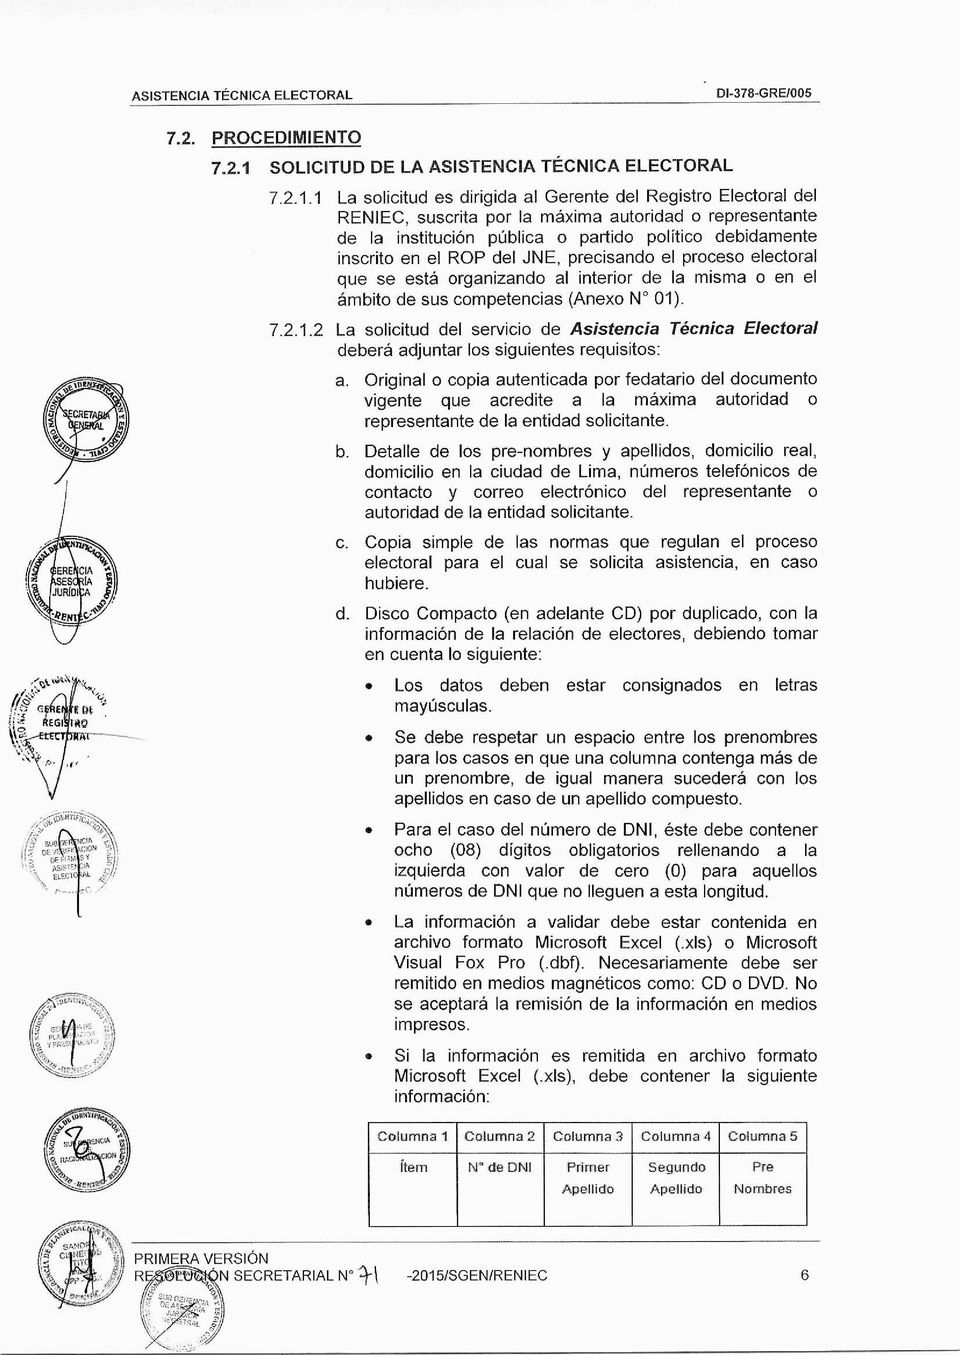 SOLICITUD DE LA ASISTENCIA TÉCNICA ELECTORAL 7.2.1.